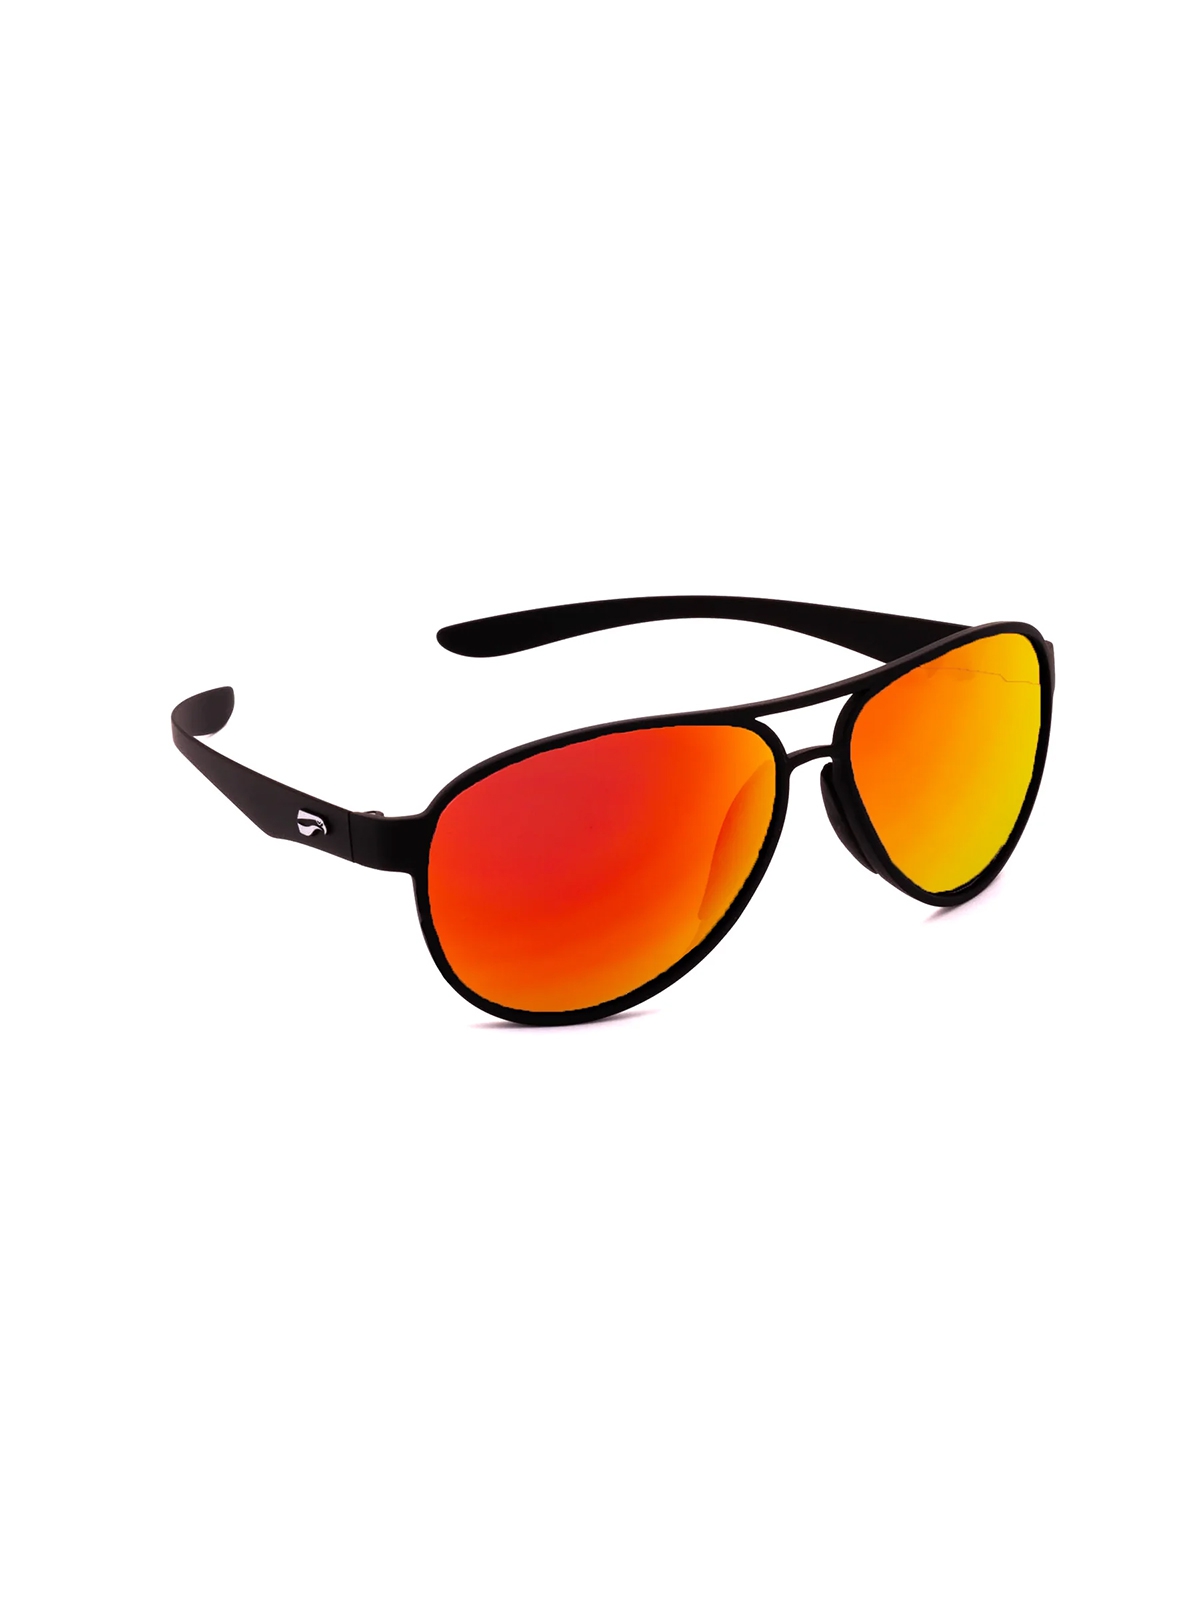 Flying Eyes Sonnenbrille Kestrel Aviator - Rahmen matt schwarz, Linsen rosenfarben (verspiegelt)